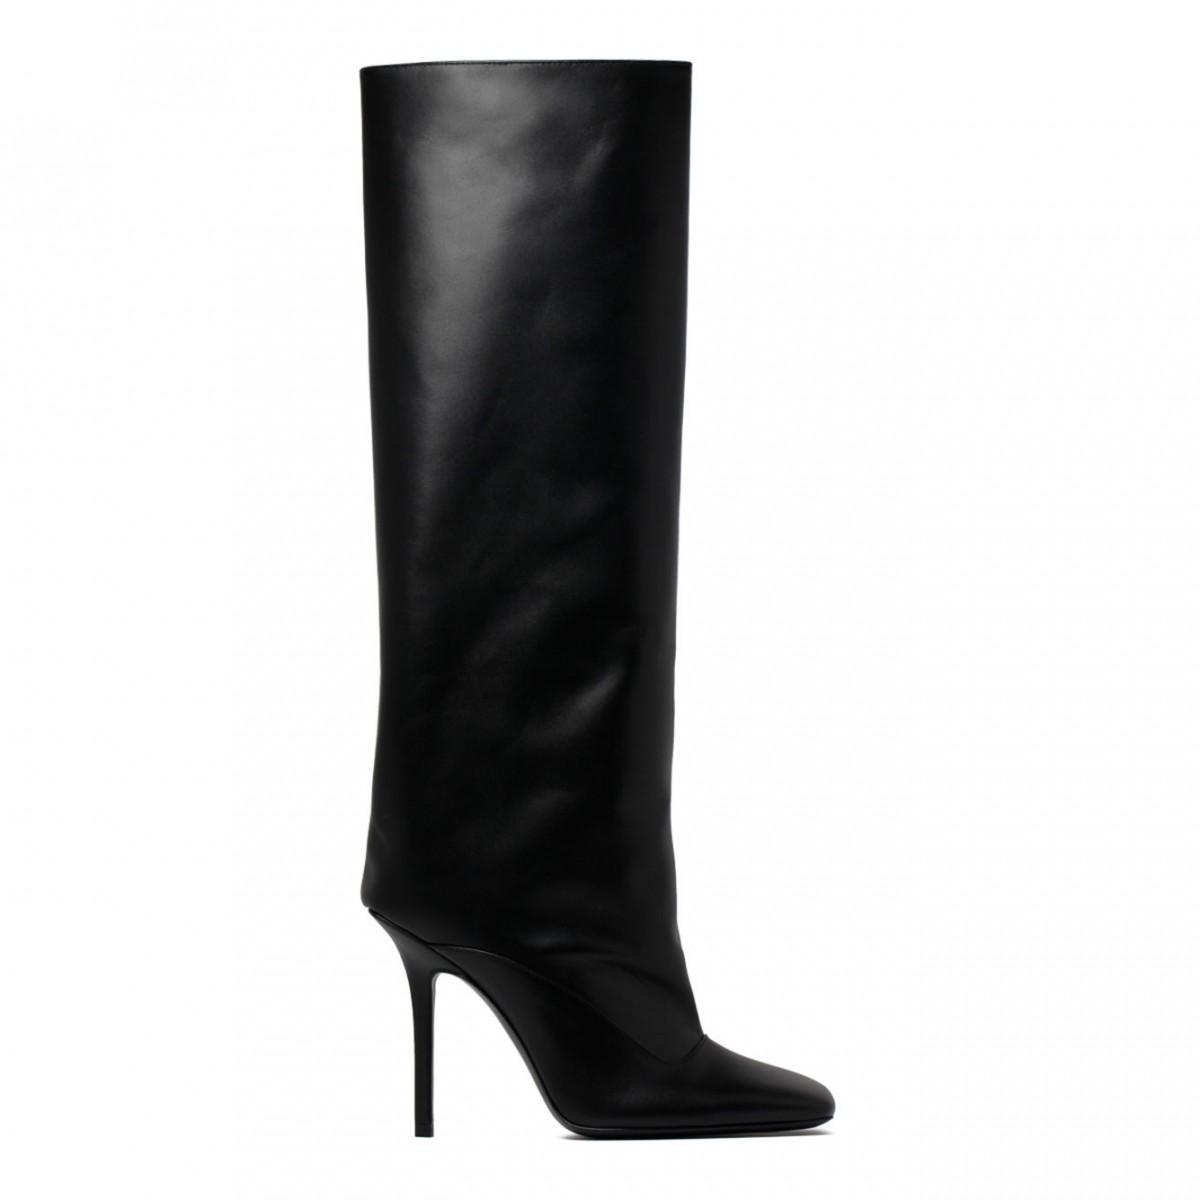 The Attico Black Calf Leather Sienna 105mm Square Toe Boots